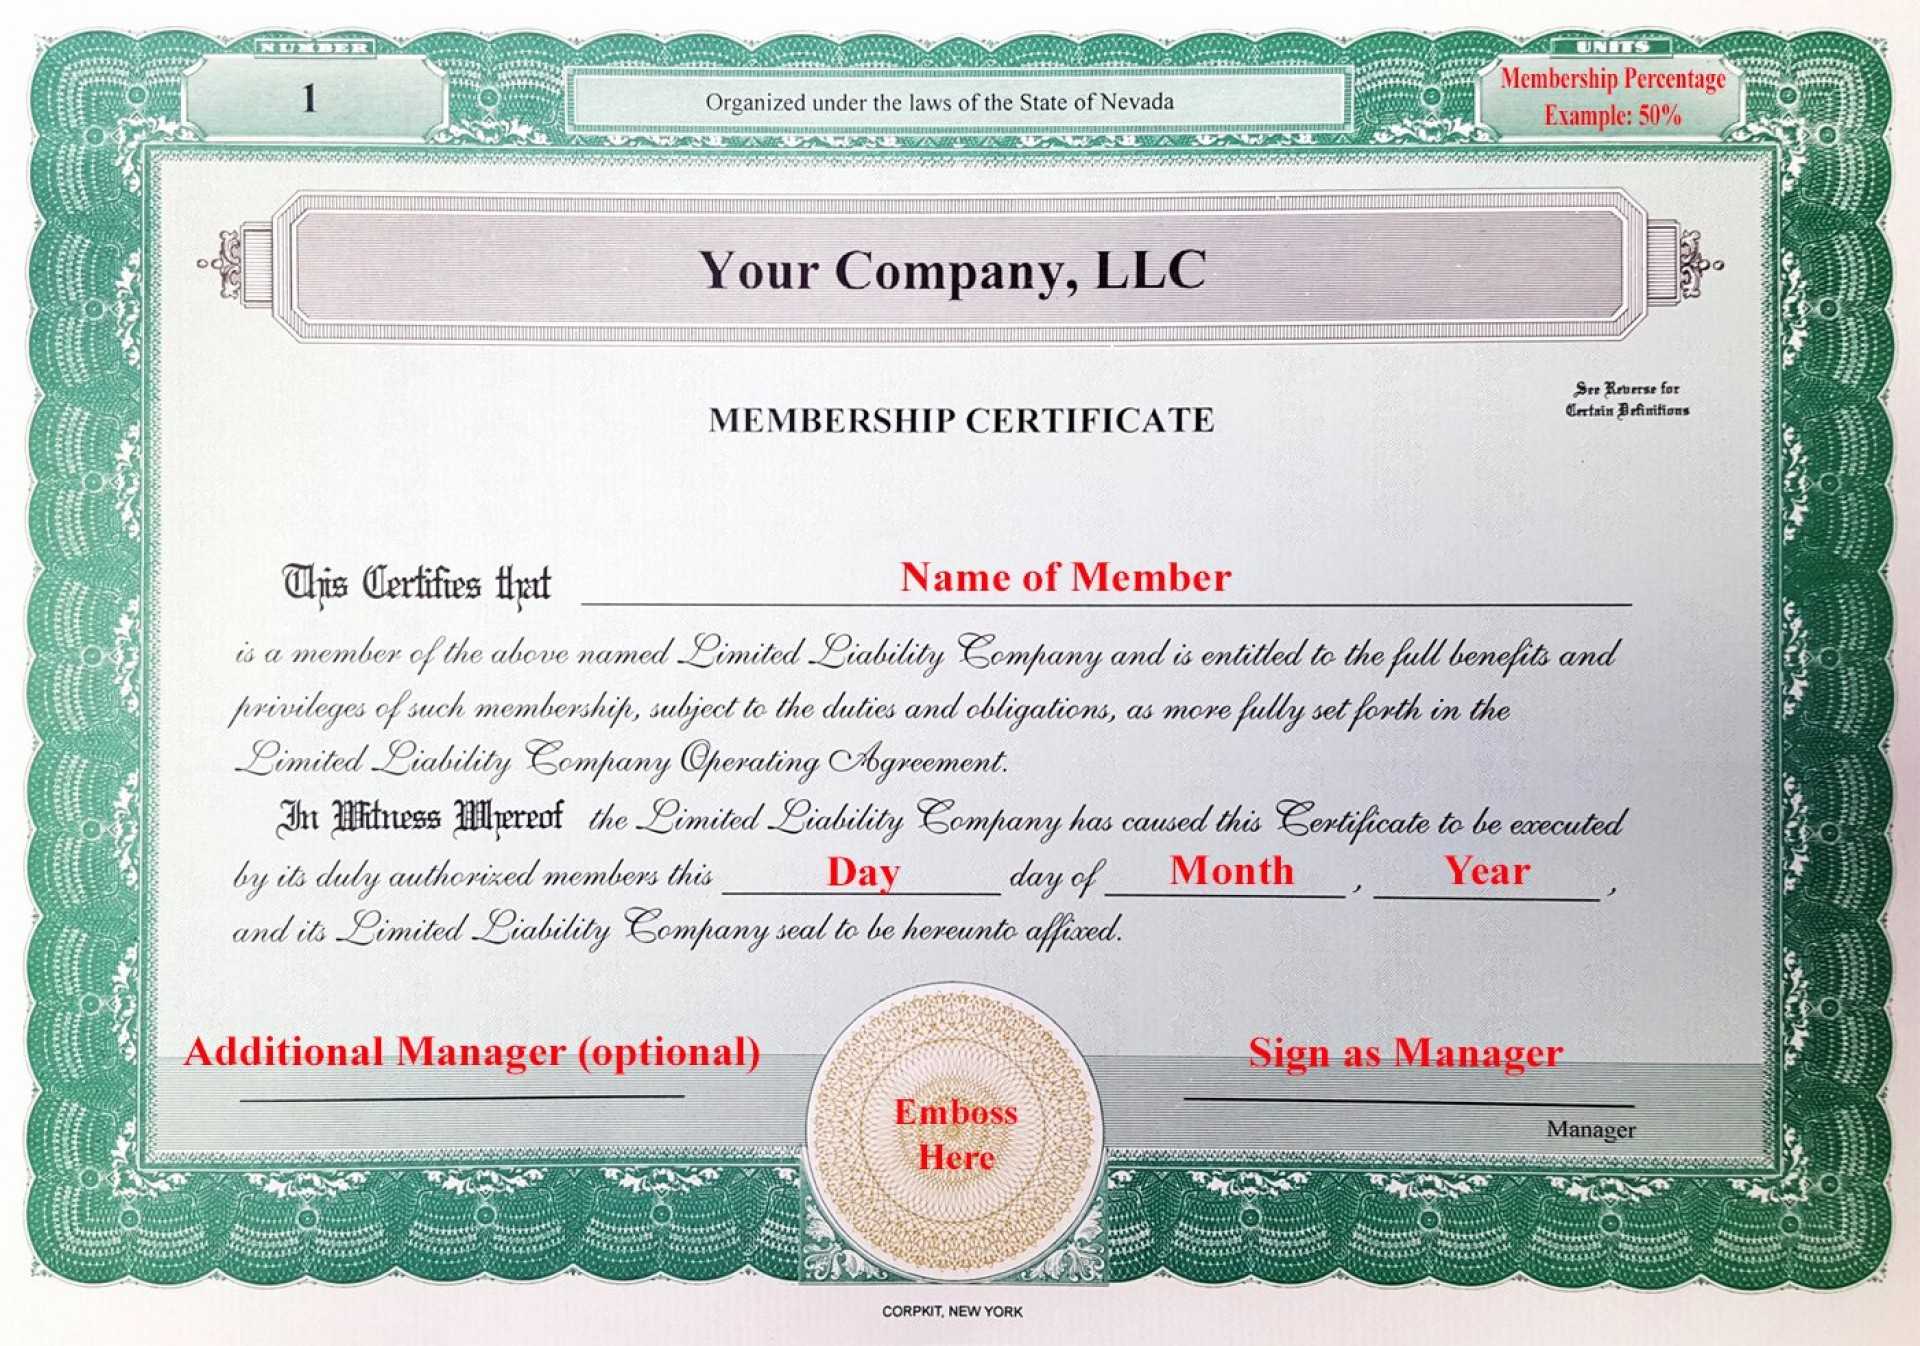 004 Llcship Certificate Template Best Of Laughlin Associates For Llc Membership Certificate Template Word